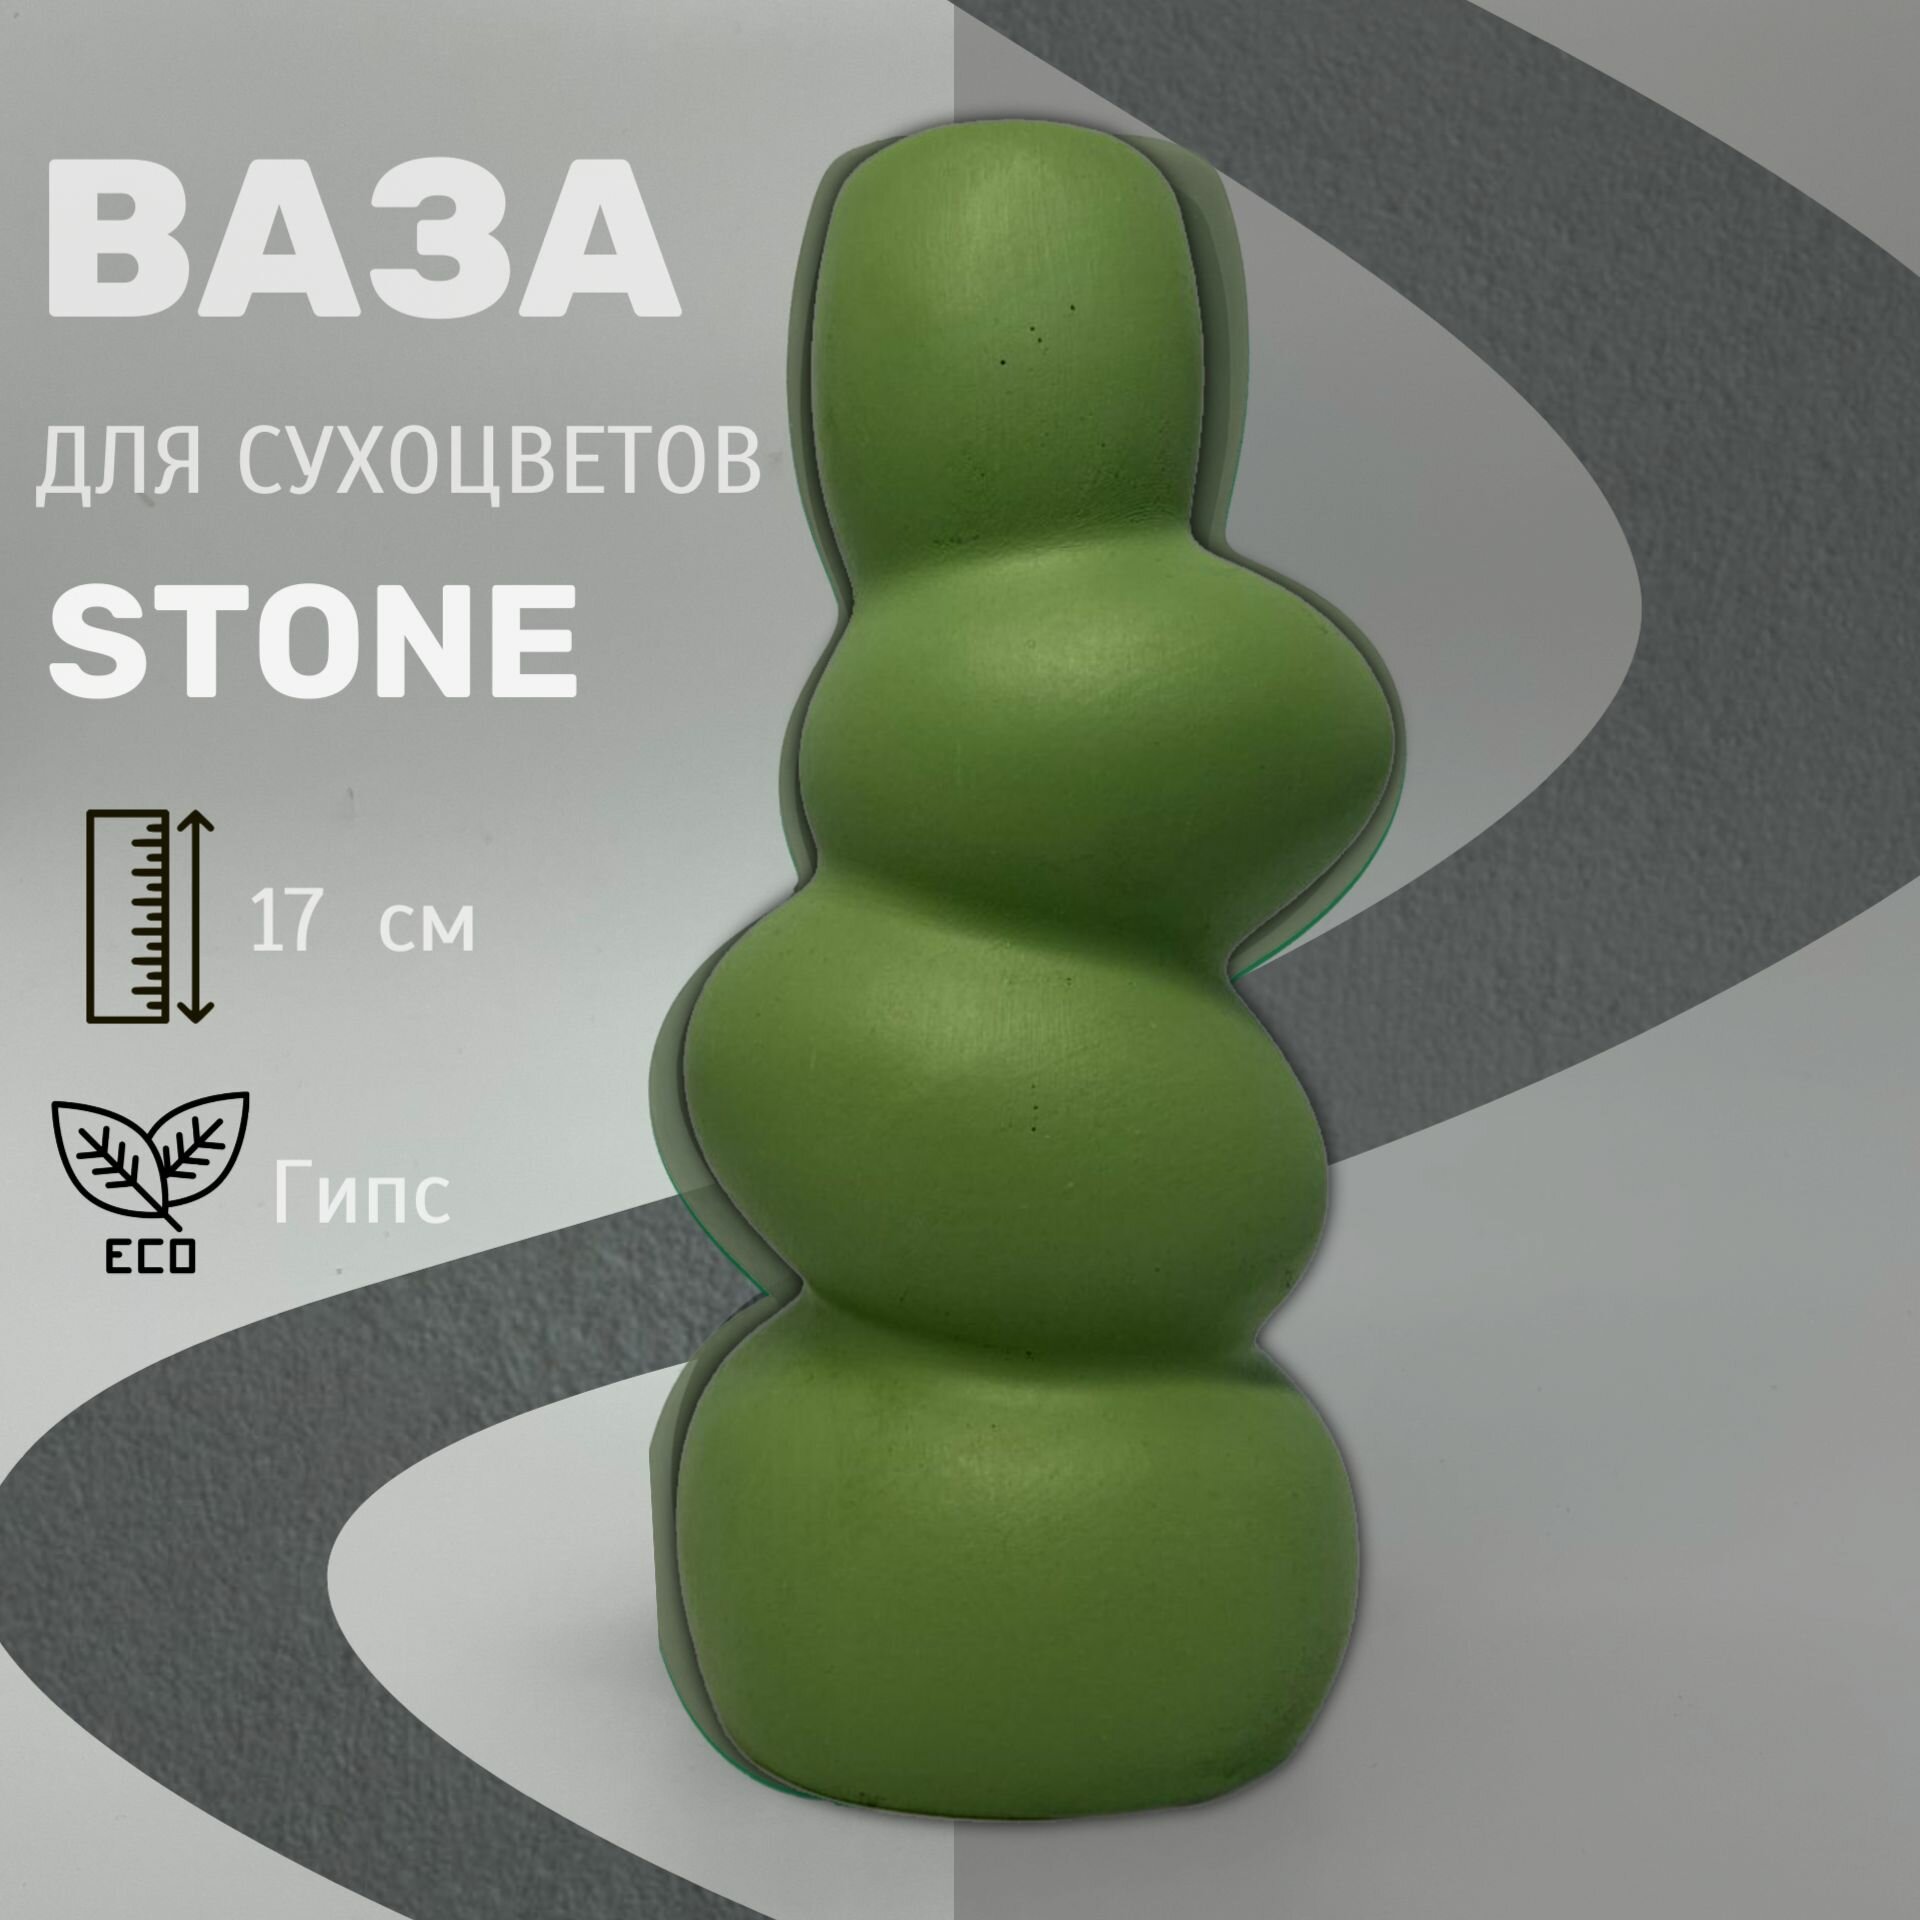 Ваза Rafiki , "Stone" интерьерная для сухоцветов , 17 см